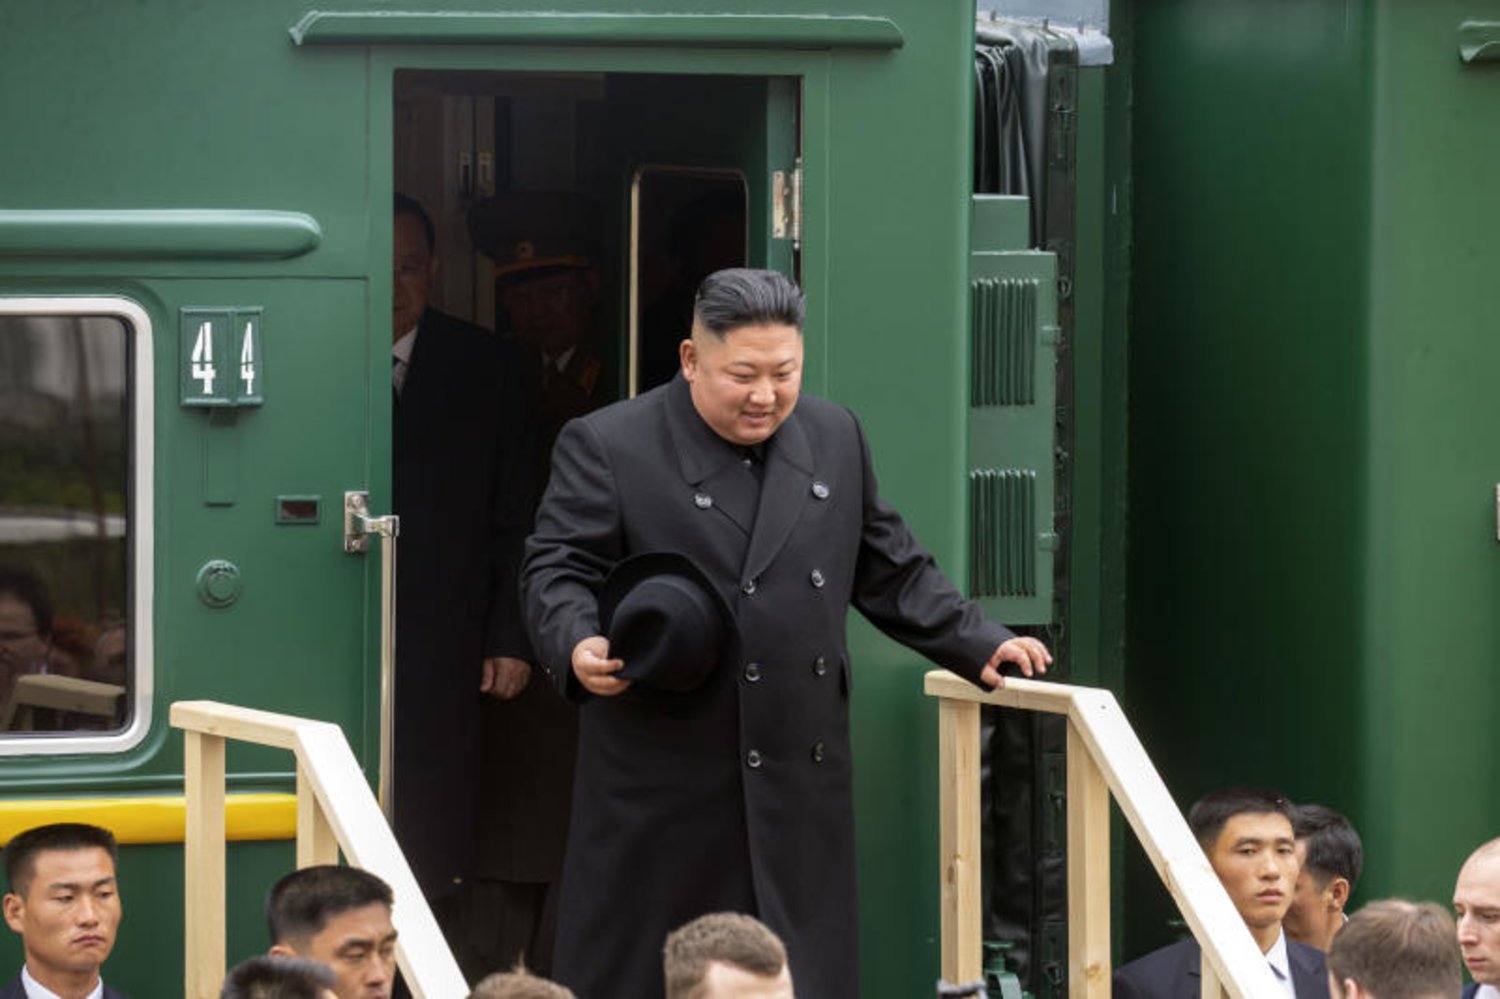 سفر جنجالی کیم به مسکو؛ تقاضای محرمانه پوتین از رهبر کره شمالی چیست؟